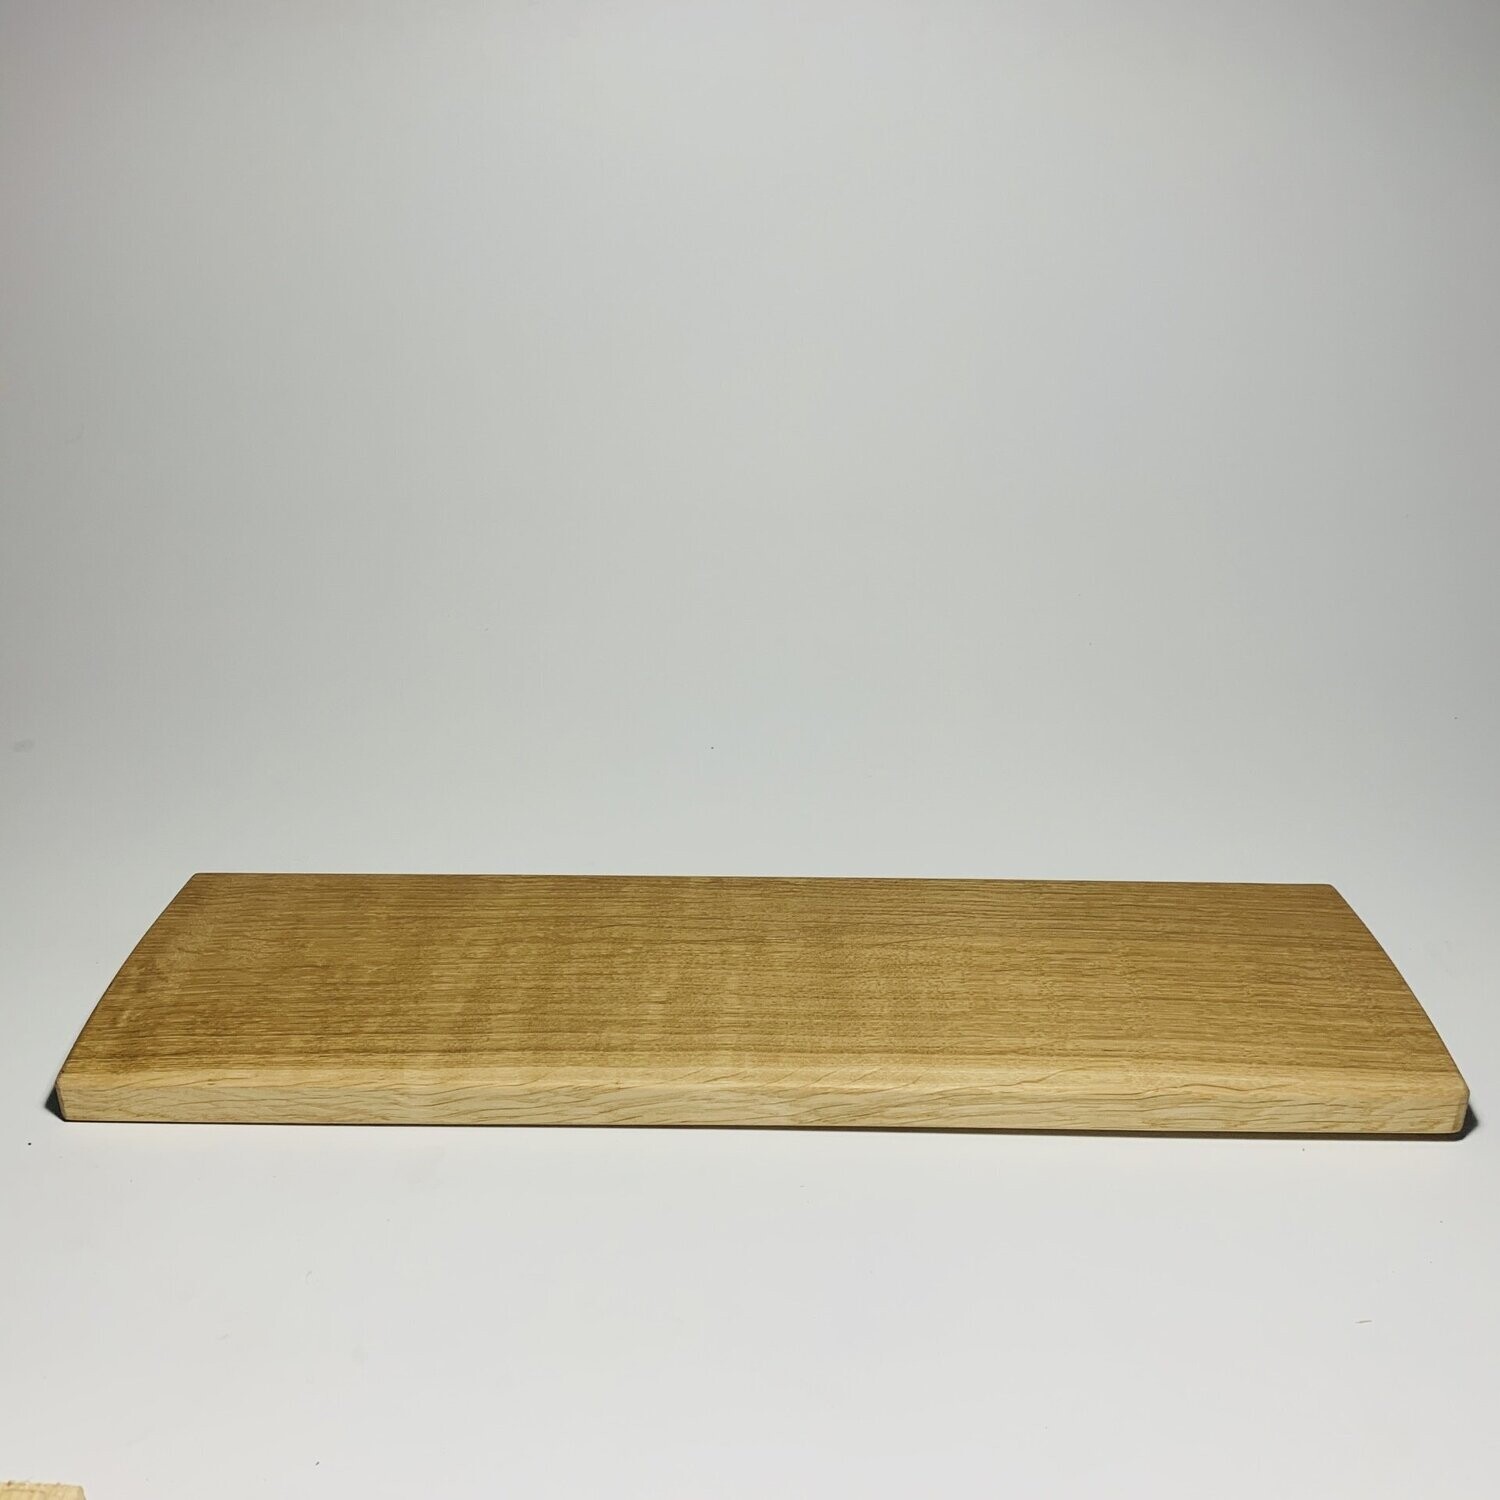 Serving platter-cheese board in oak